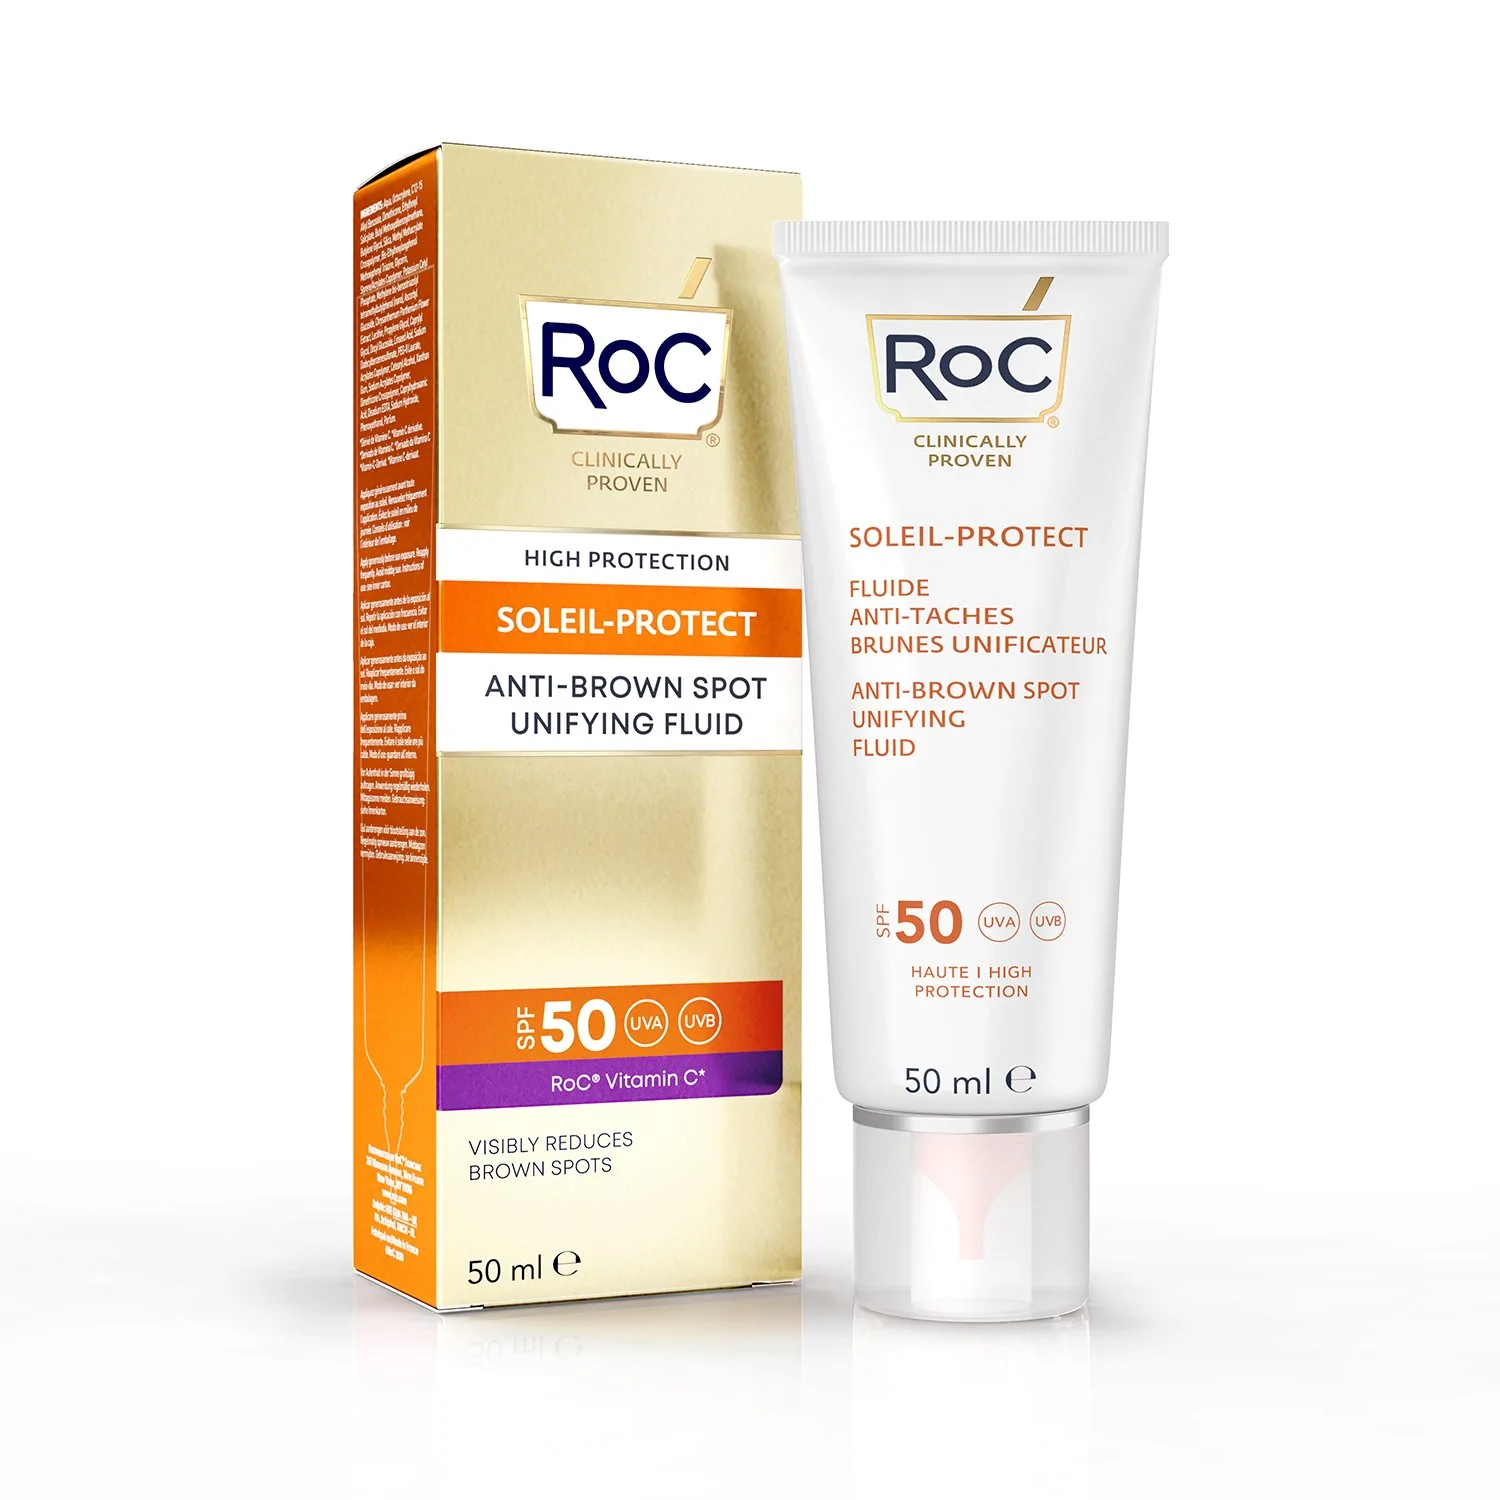 ROC Soleil-Protect Anti Manchas SPF50. Esta crema además de ser protectora, reduce visiblemente las manchas marrones, protege y mejora la apariencia juvenil de la piel.